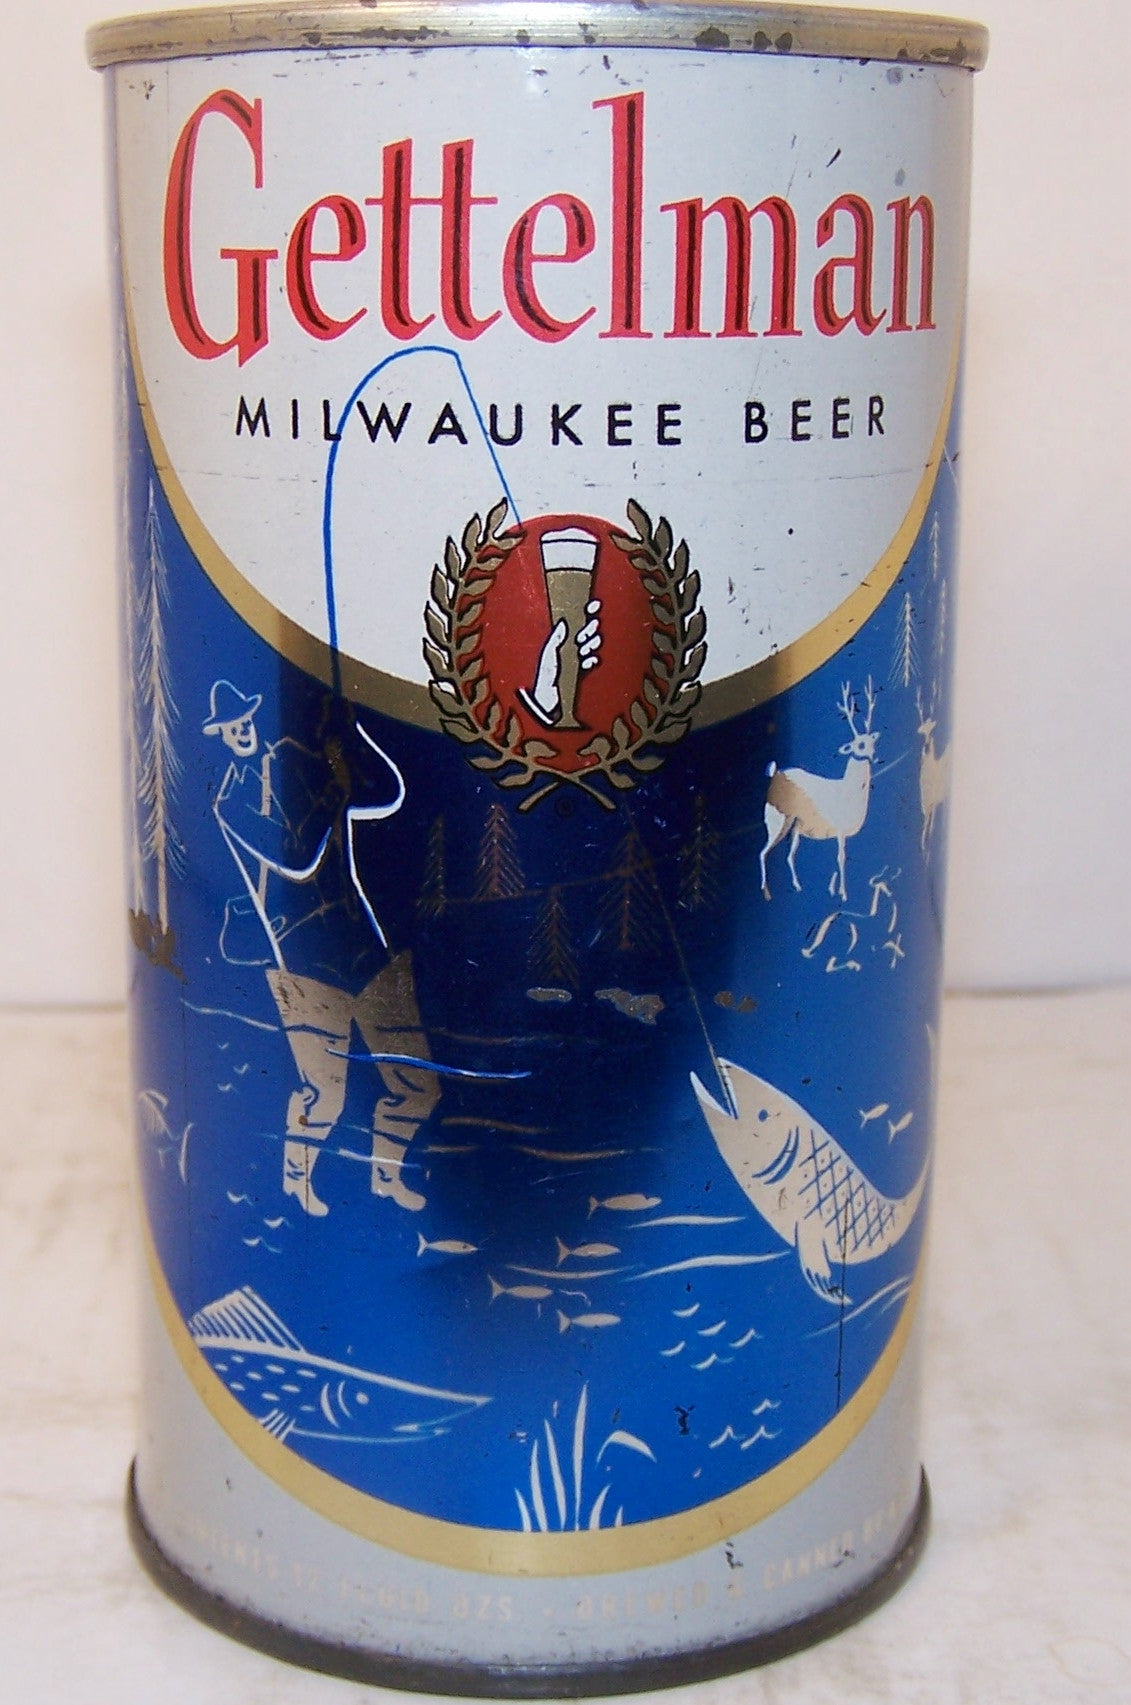 Gettelman "fishing" beer, USBC 69-11, Grade 1- Sold 4/24/15